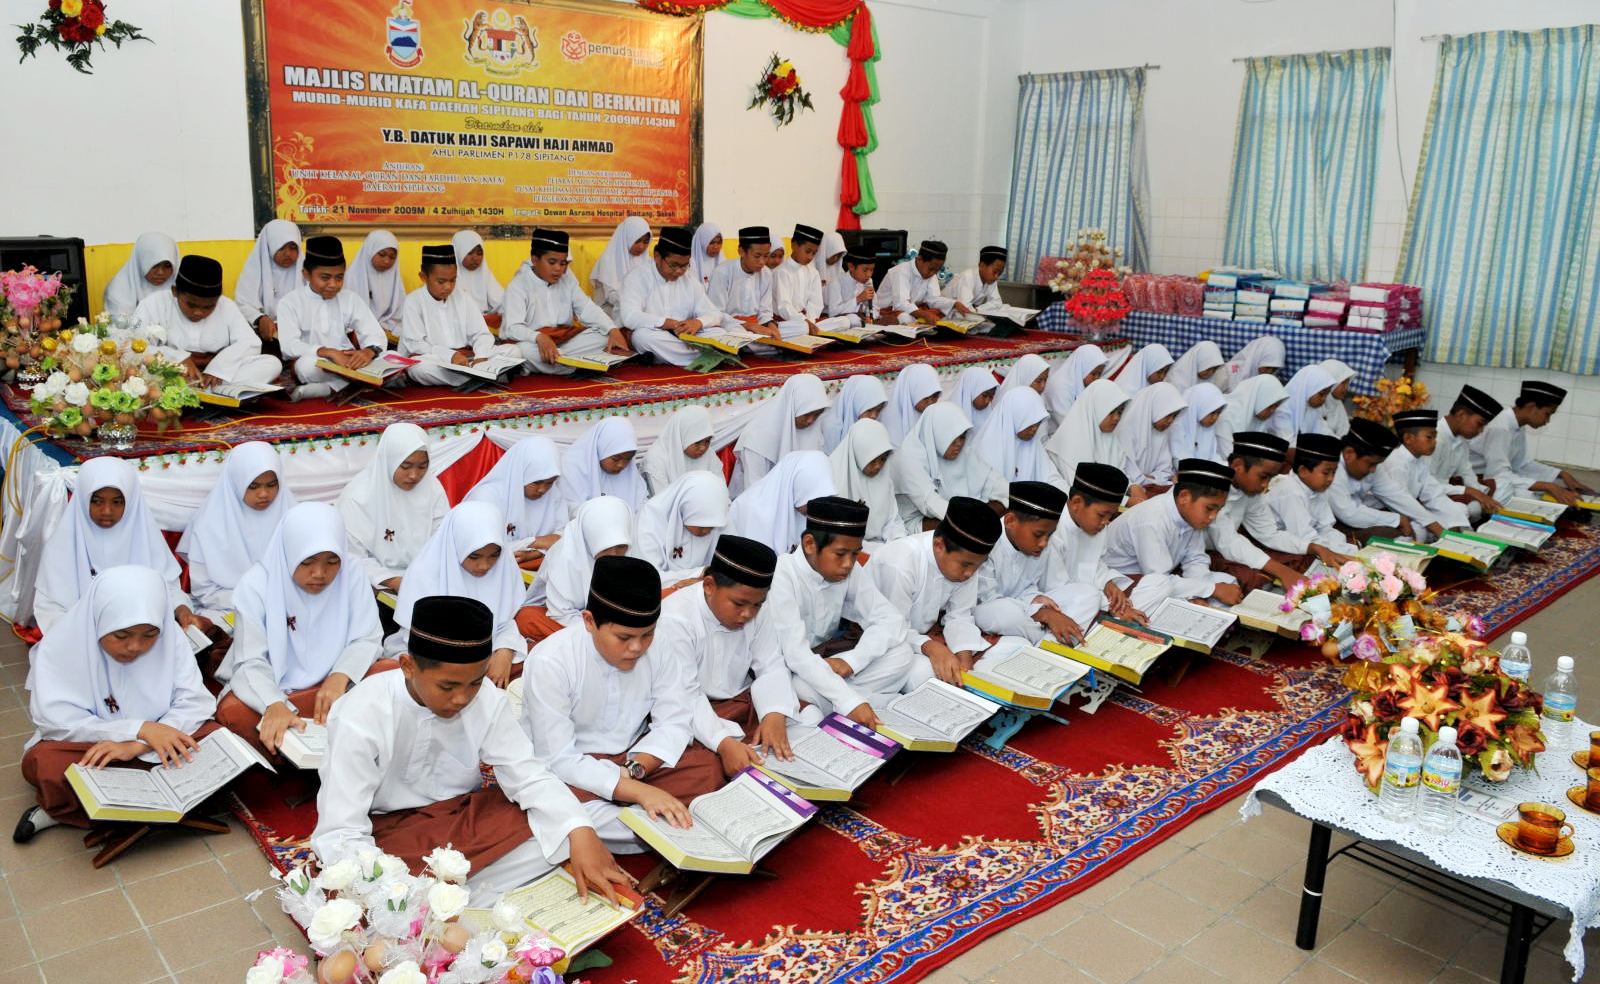 PORTAL PANITIA PENDIDIKAN ISLAM HULU SELANGOR: Majlis 